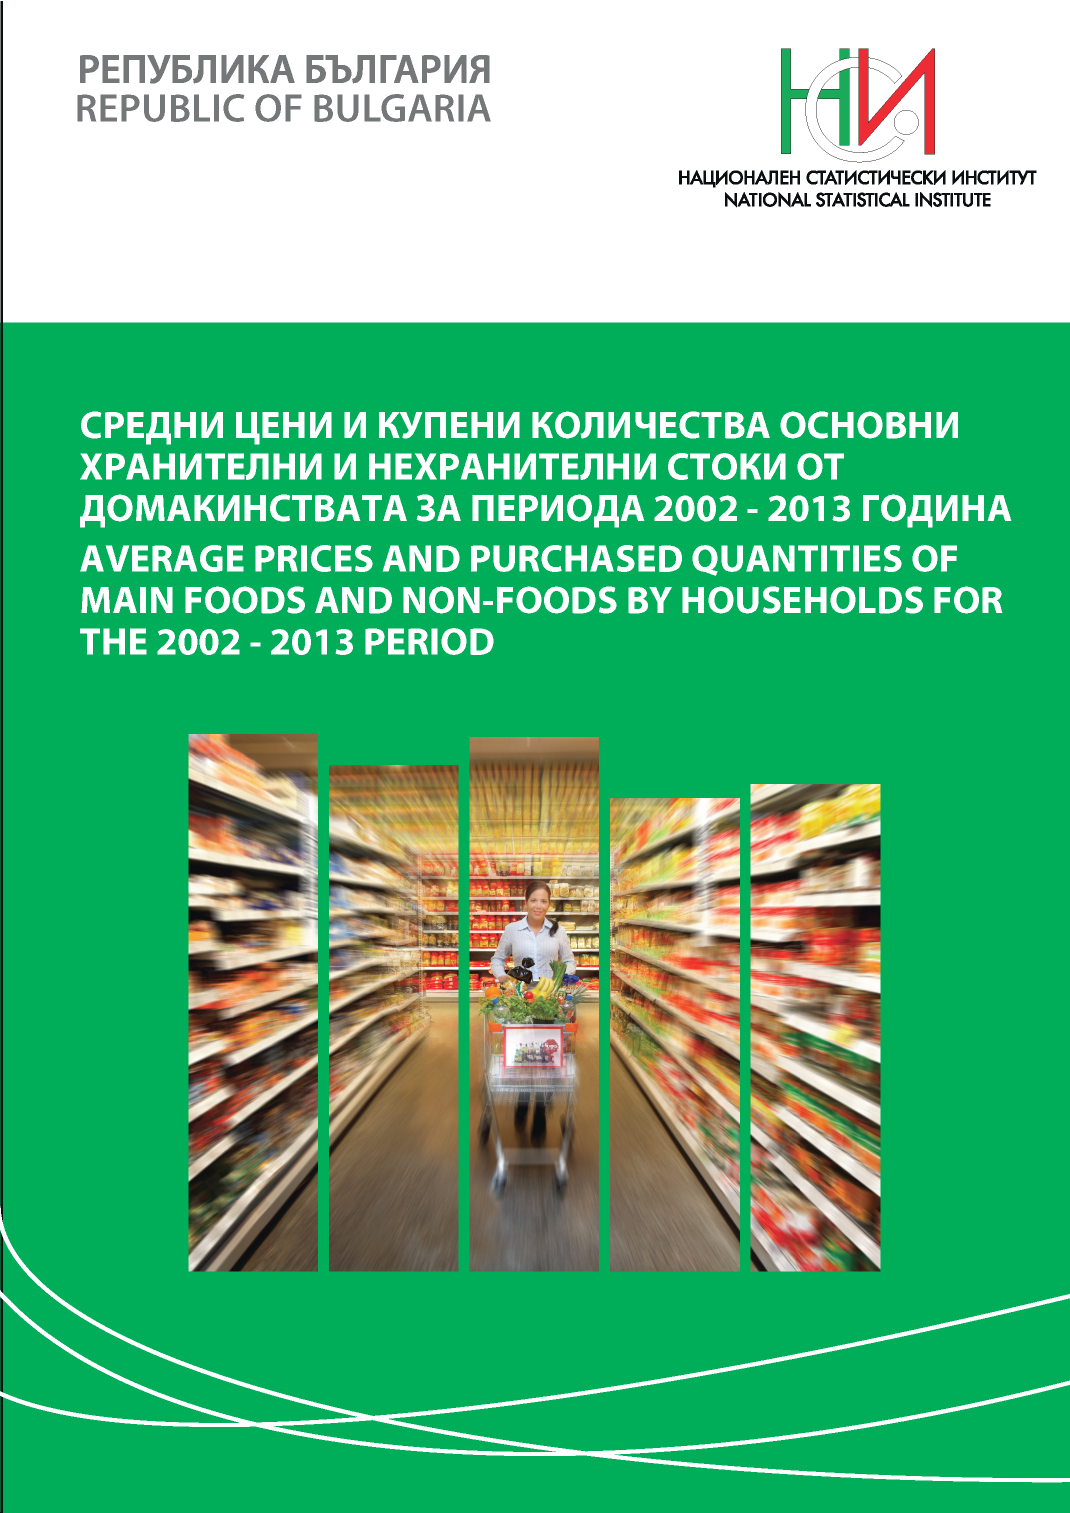 Средни цени и купени количества основни хранителни и нехранителни стоки от домакинствата за периода 2002 - 2013 година